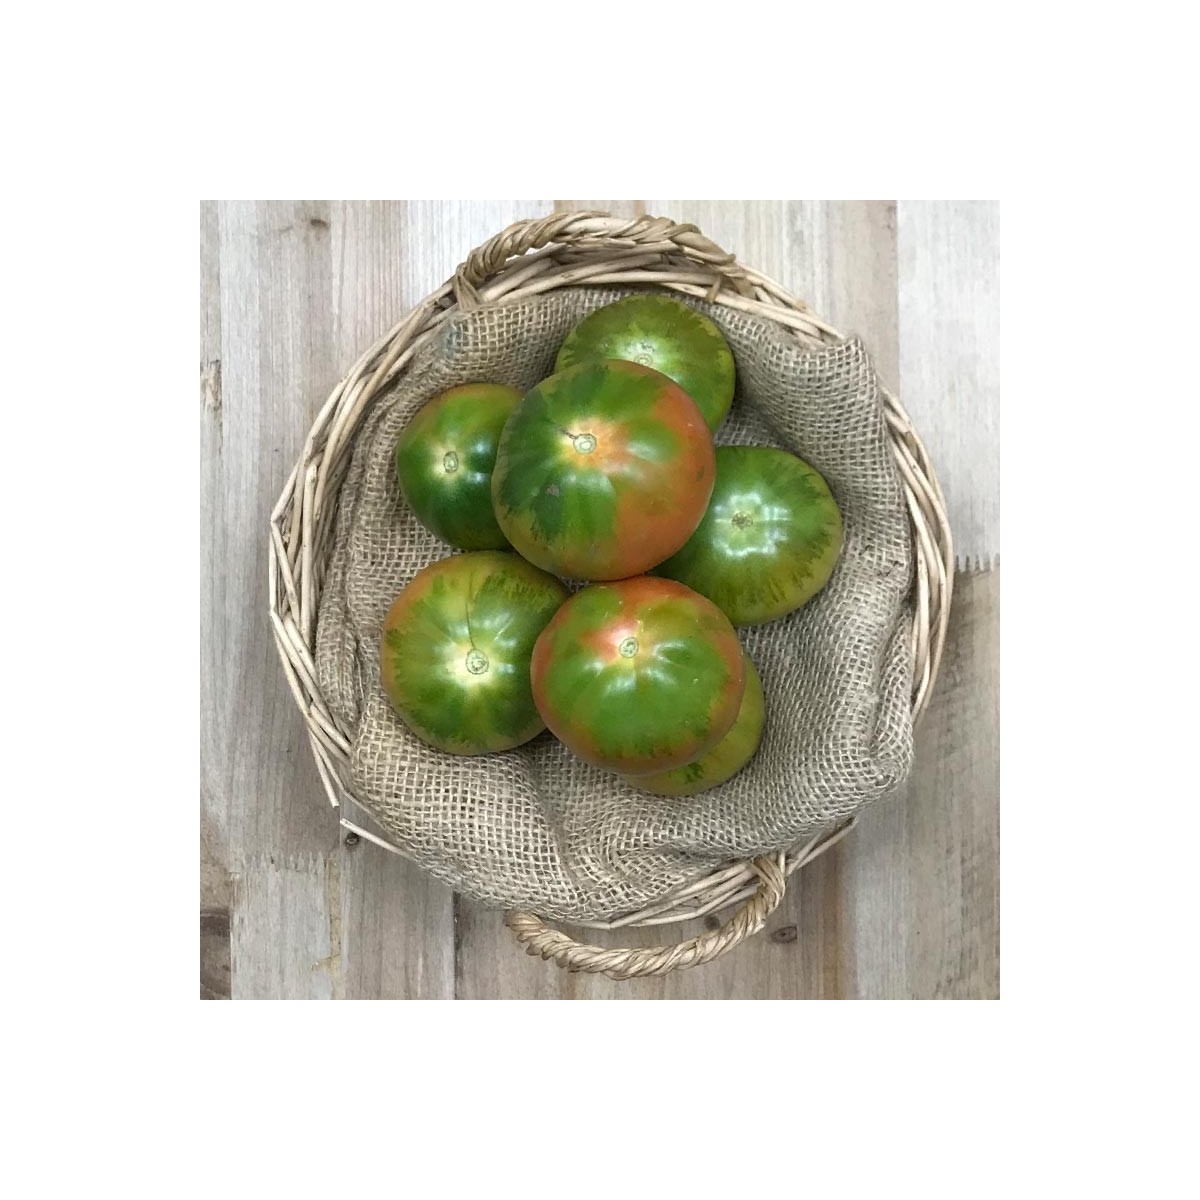 Tomates Muchamiel Mazarrón - Selección de Tomates -1- Lo mejor de la fruta